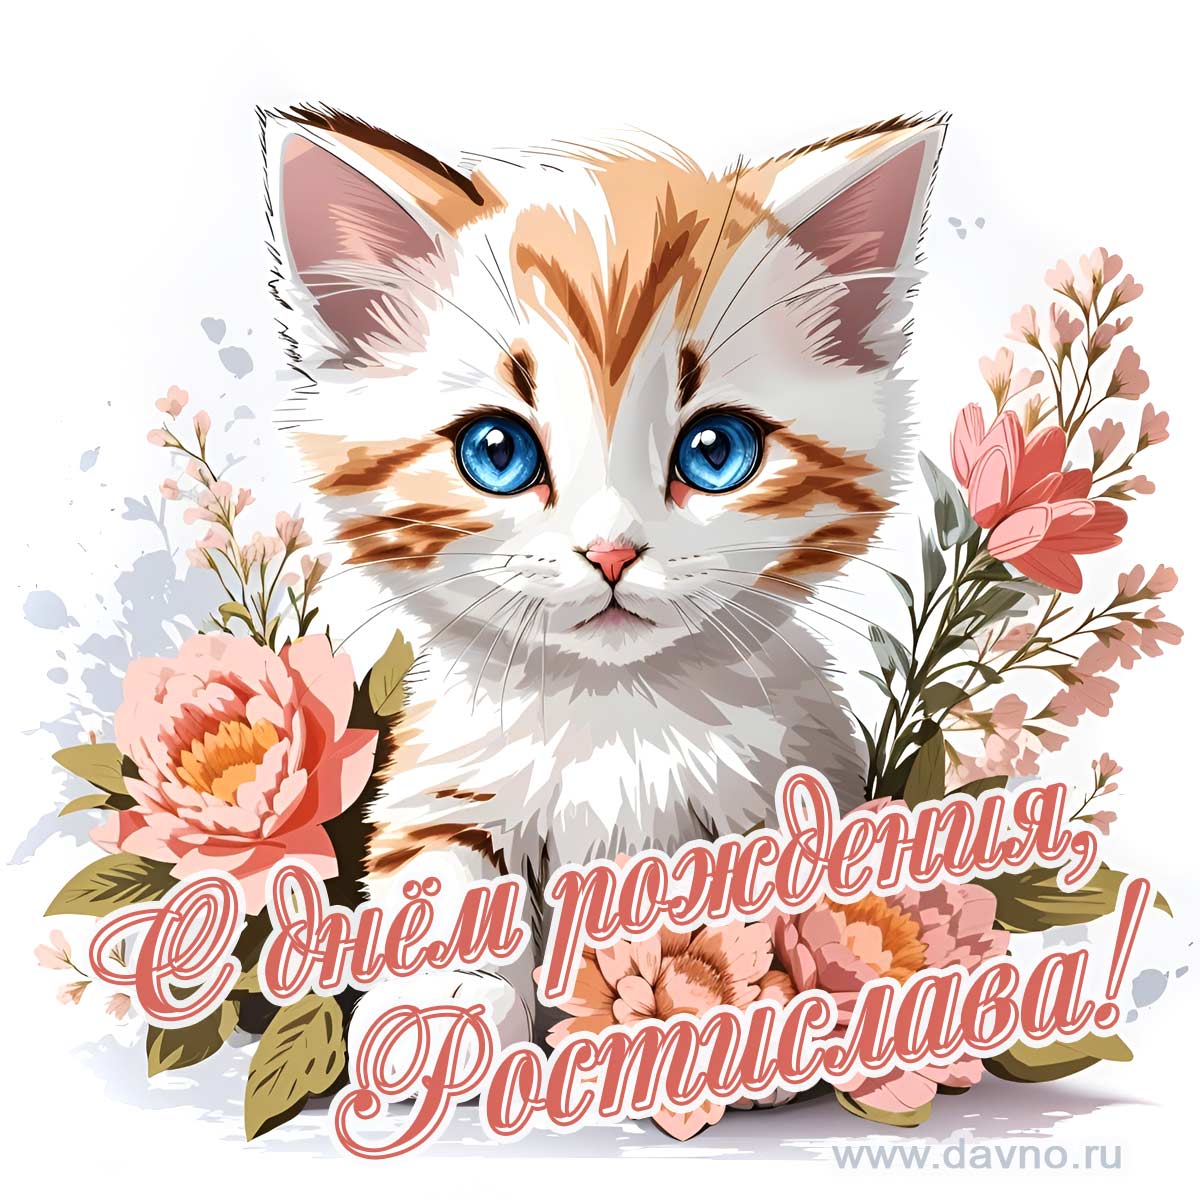 Новая рисованная поздравительная открытка для Ростиславы с котёнком